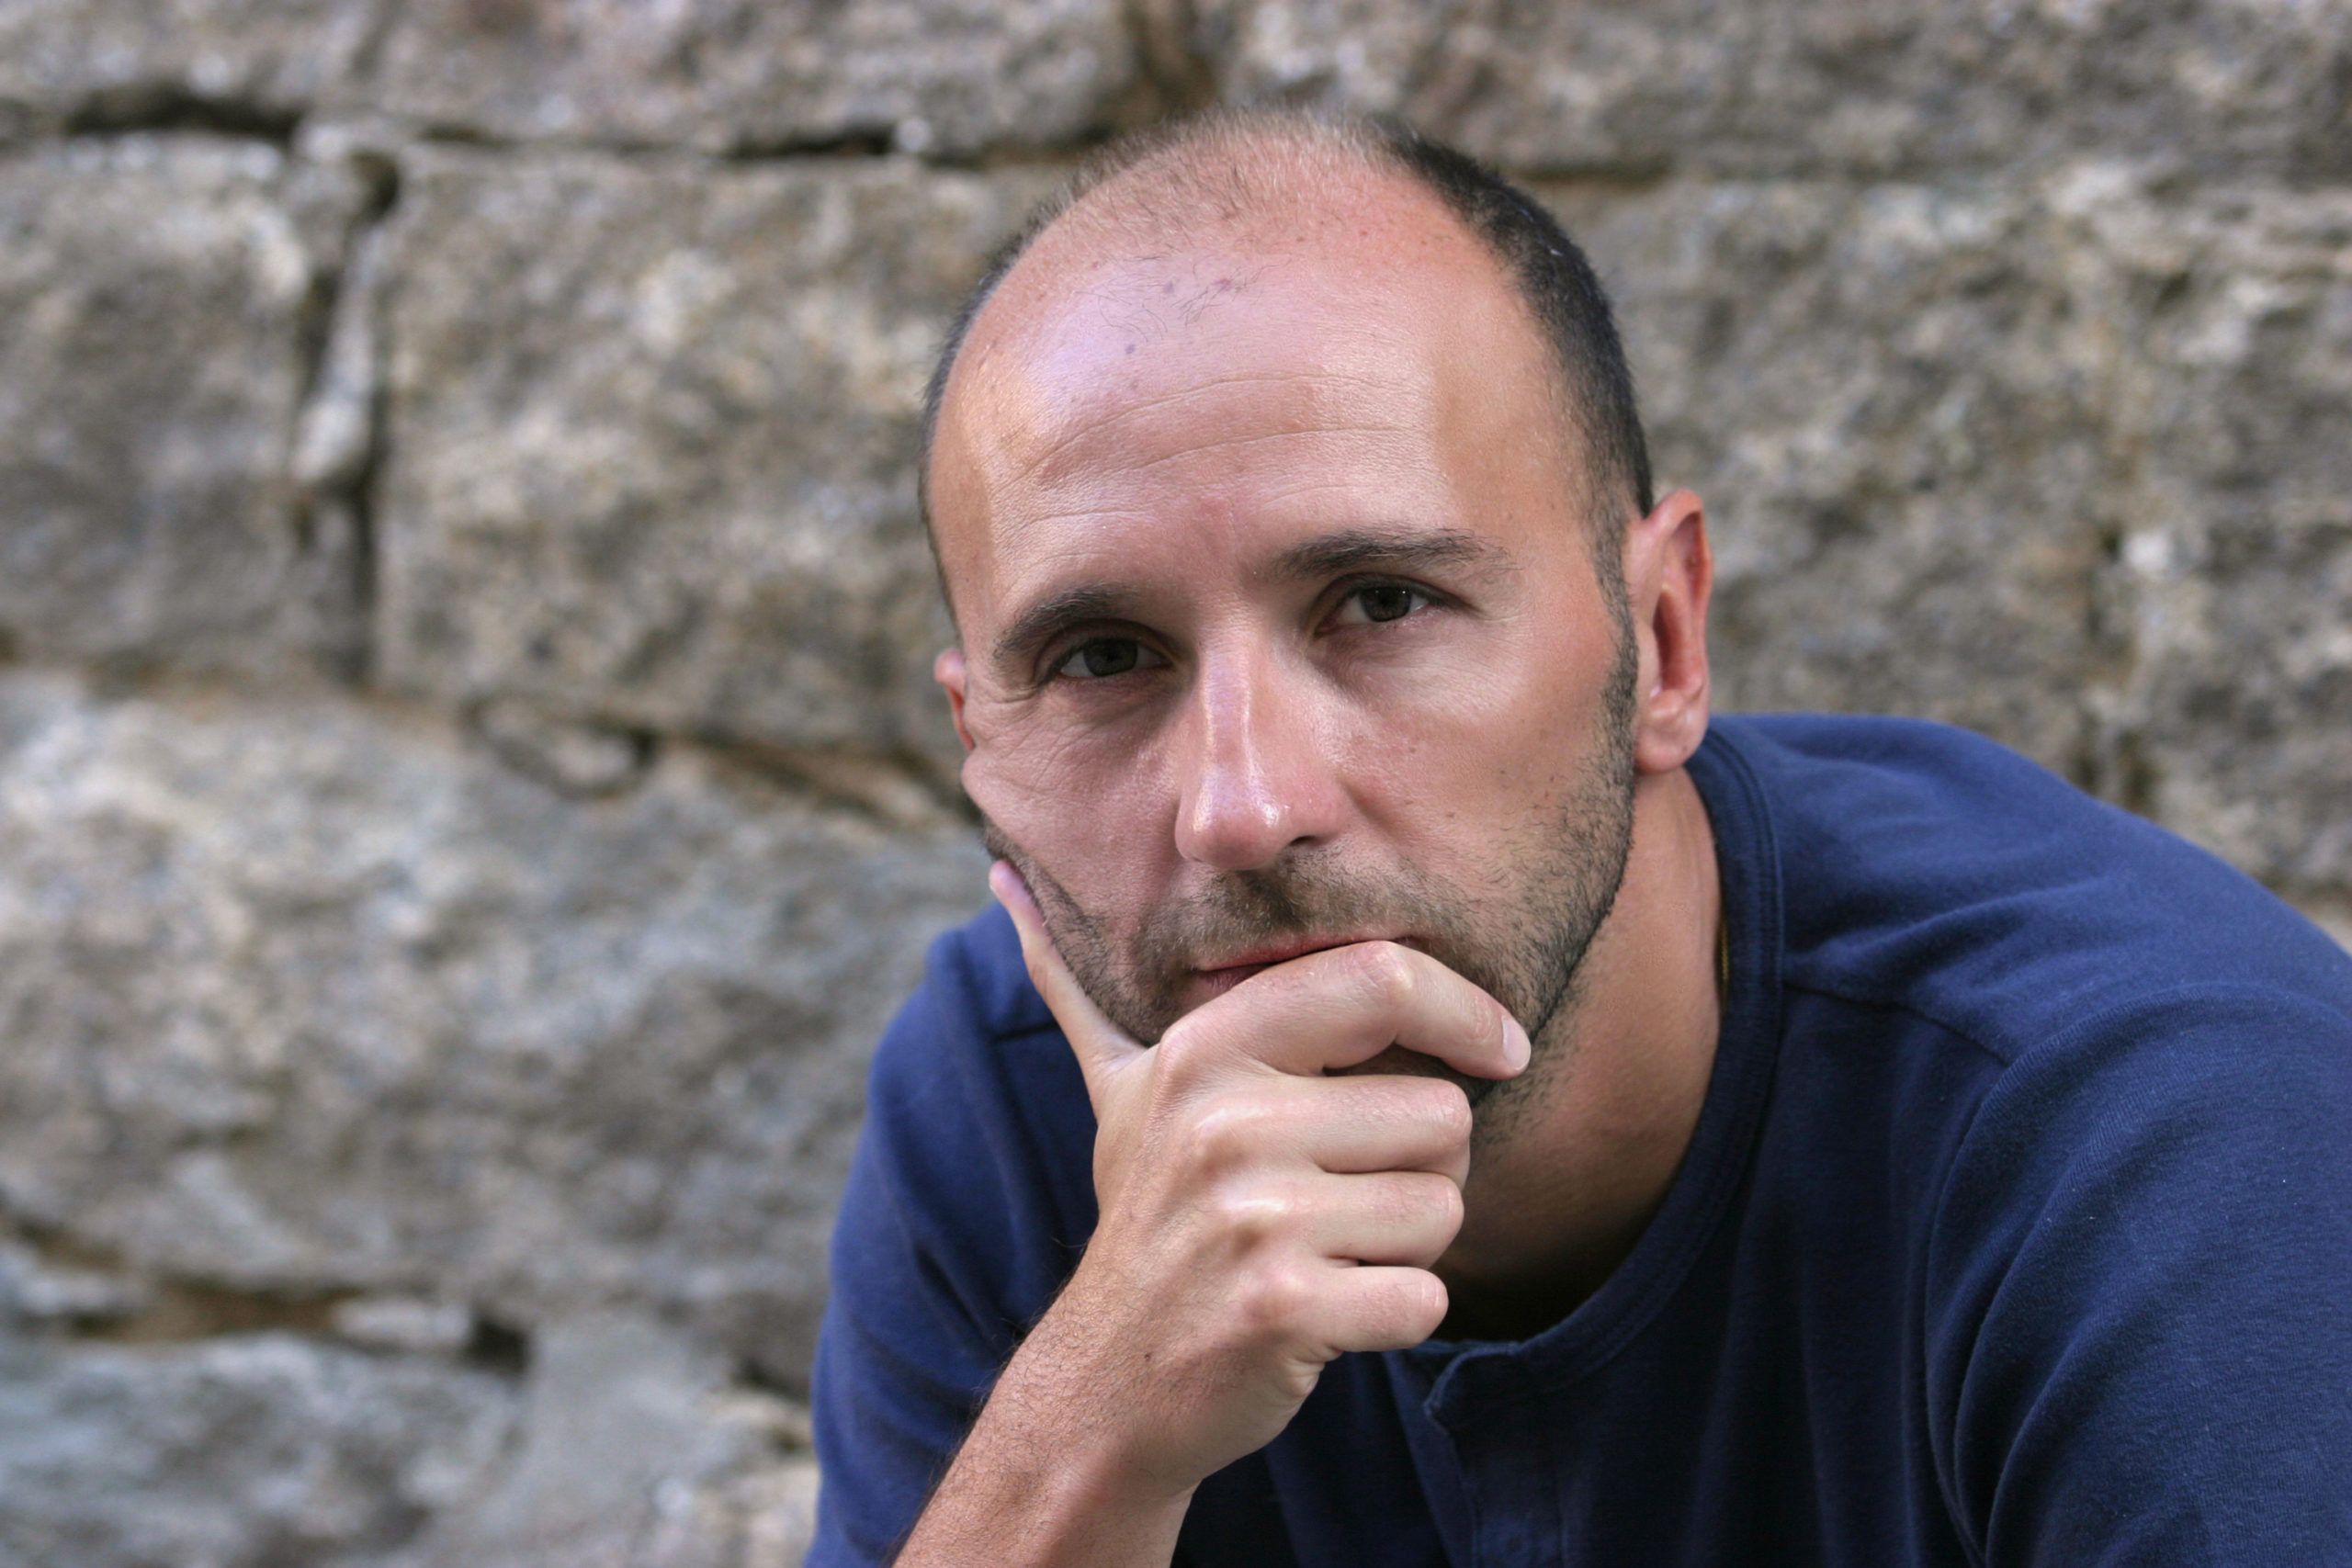 Mauro Covacich